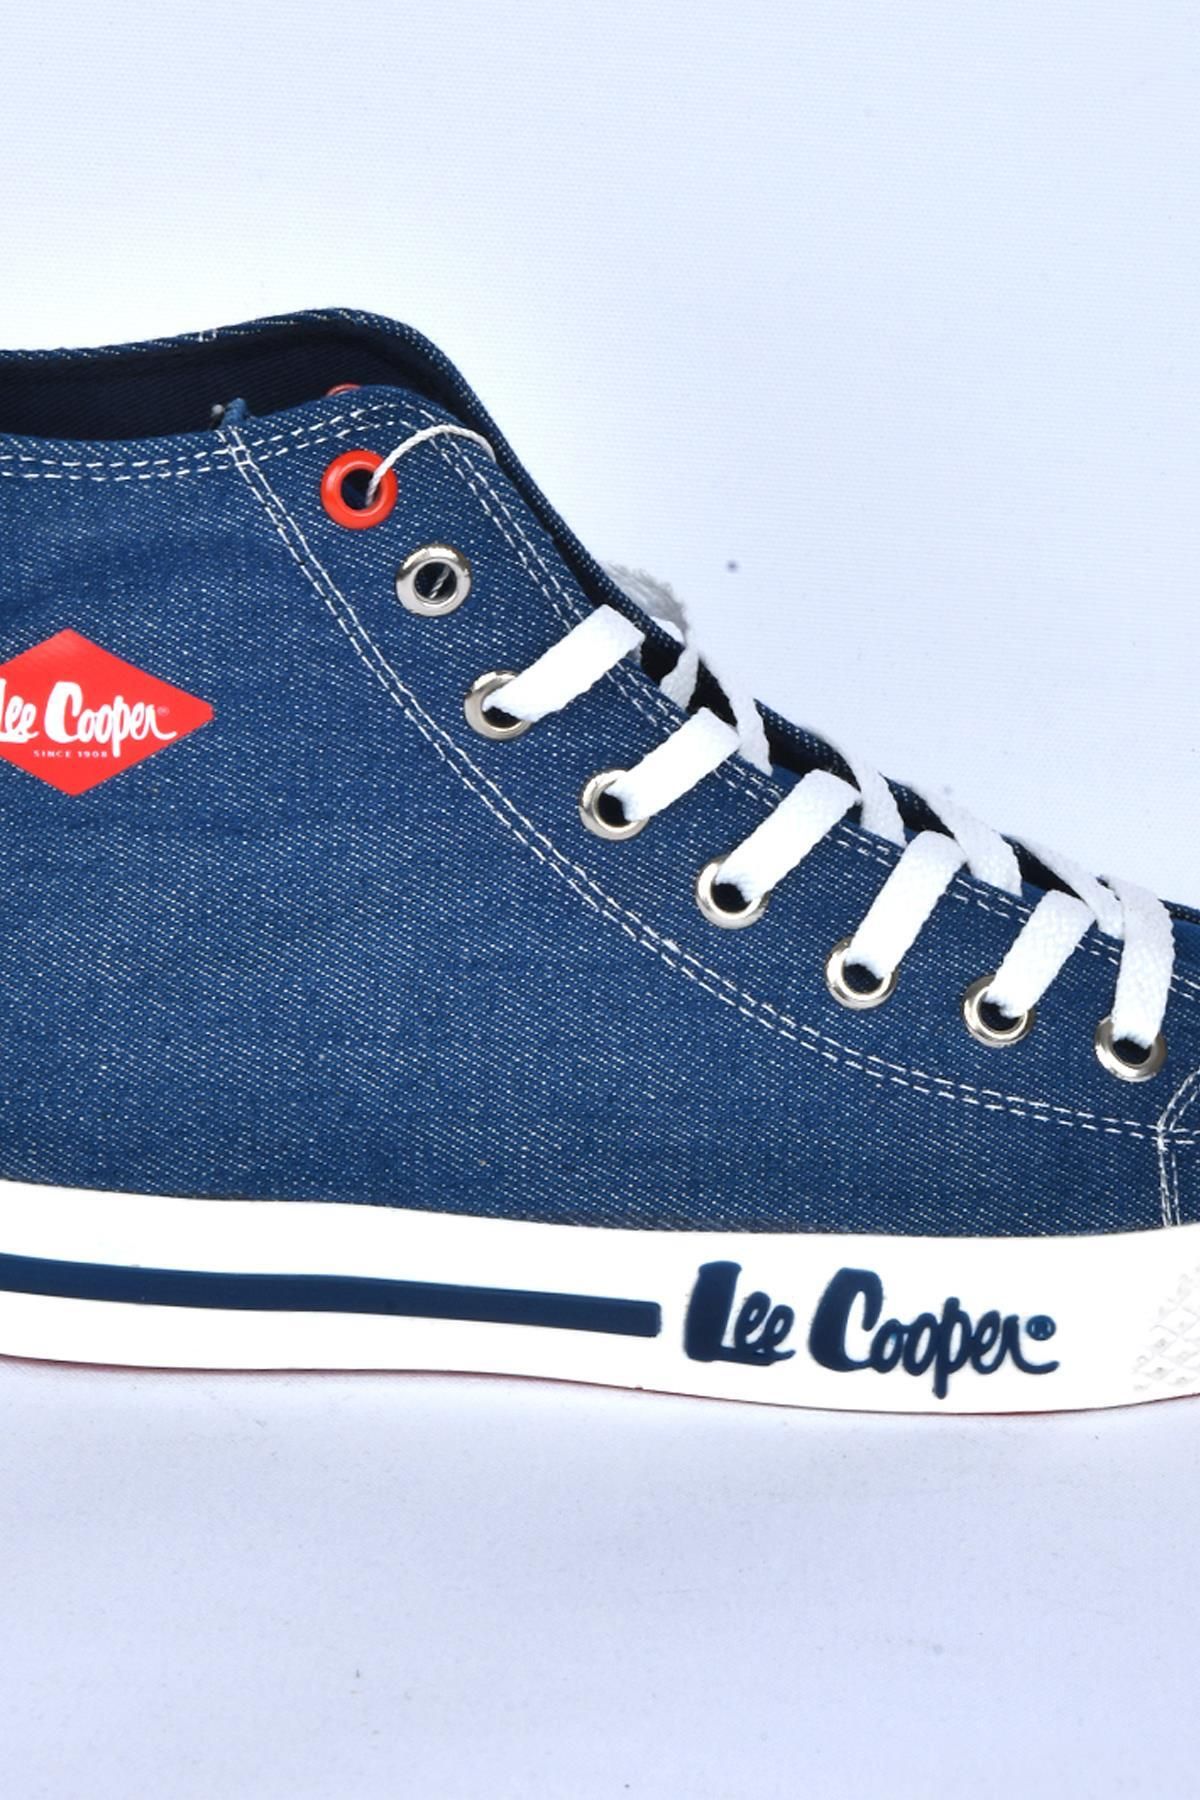 Lee Cooper کفش ورزشی مردانه LC-30100 شلوار جین آبی